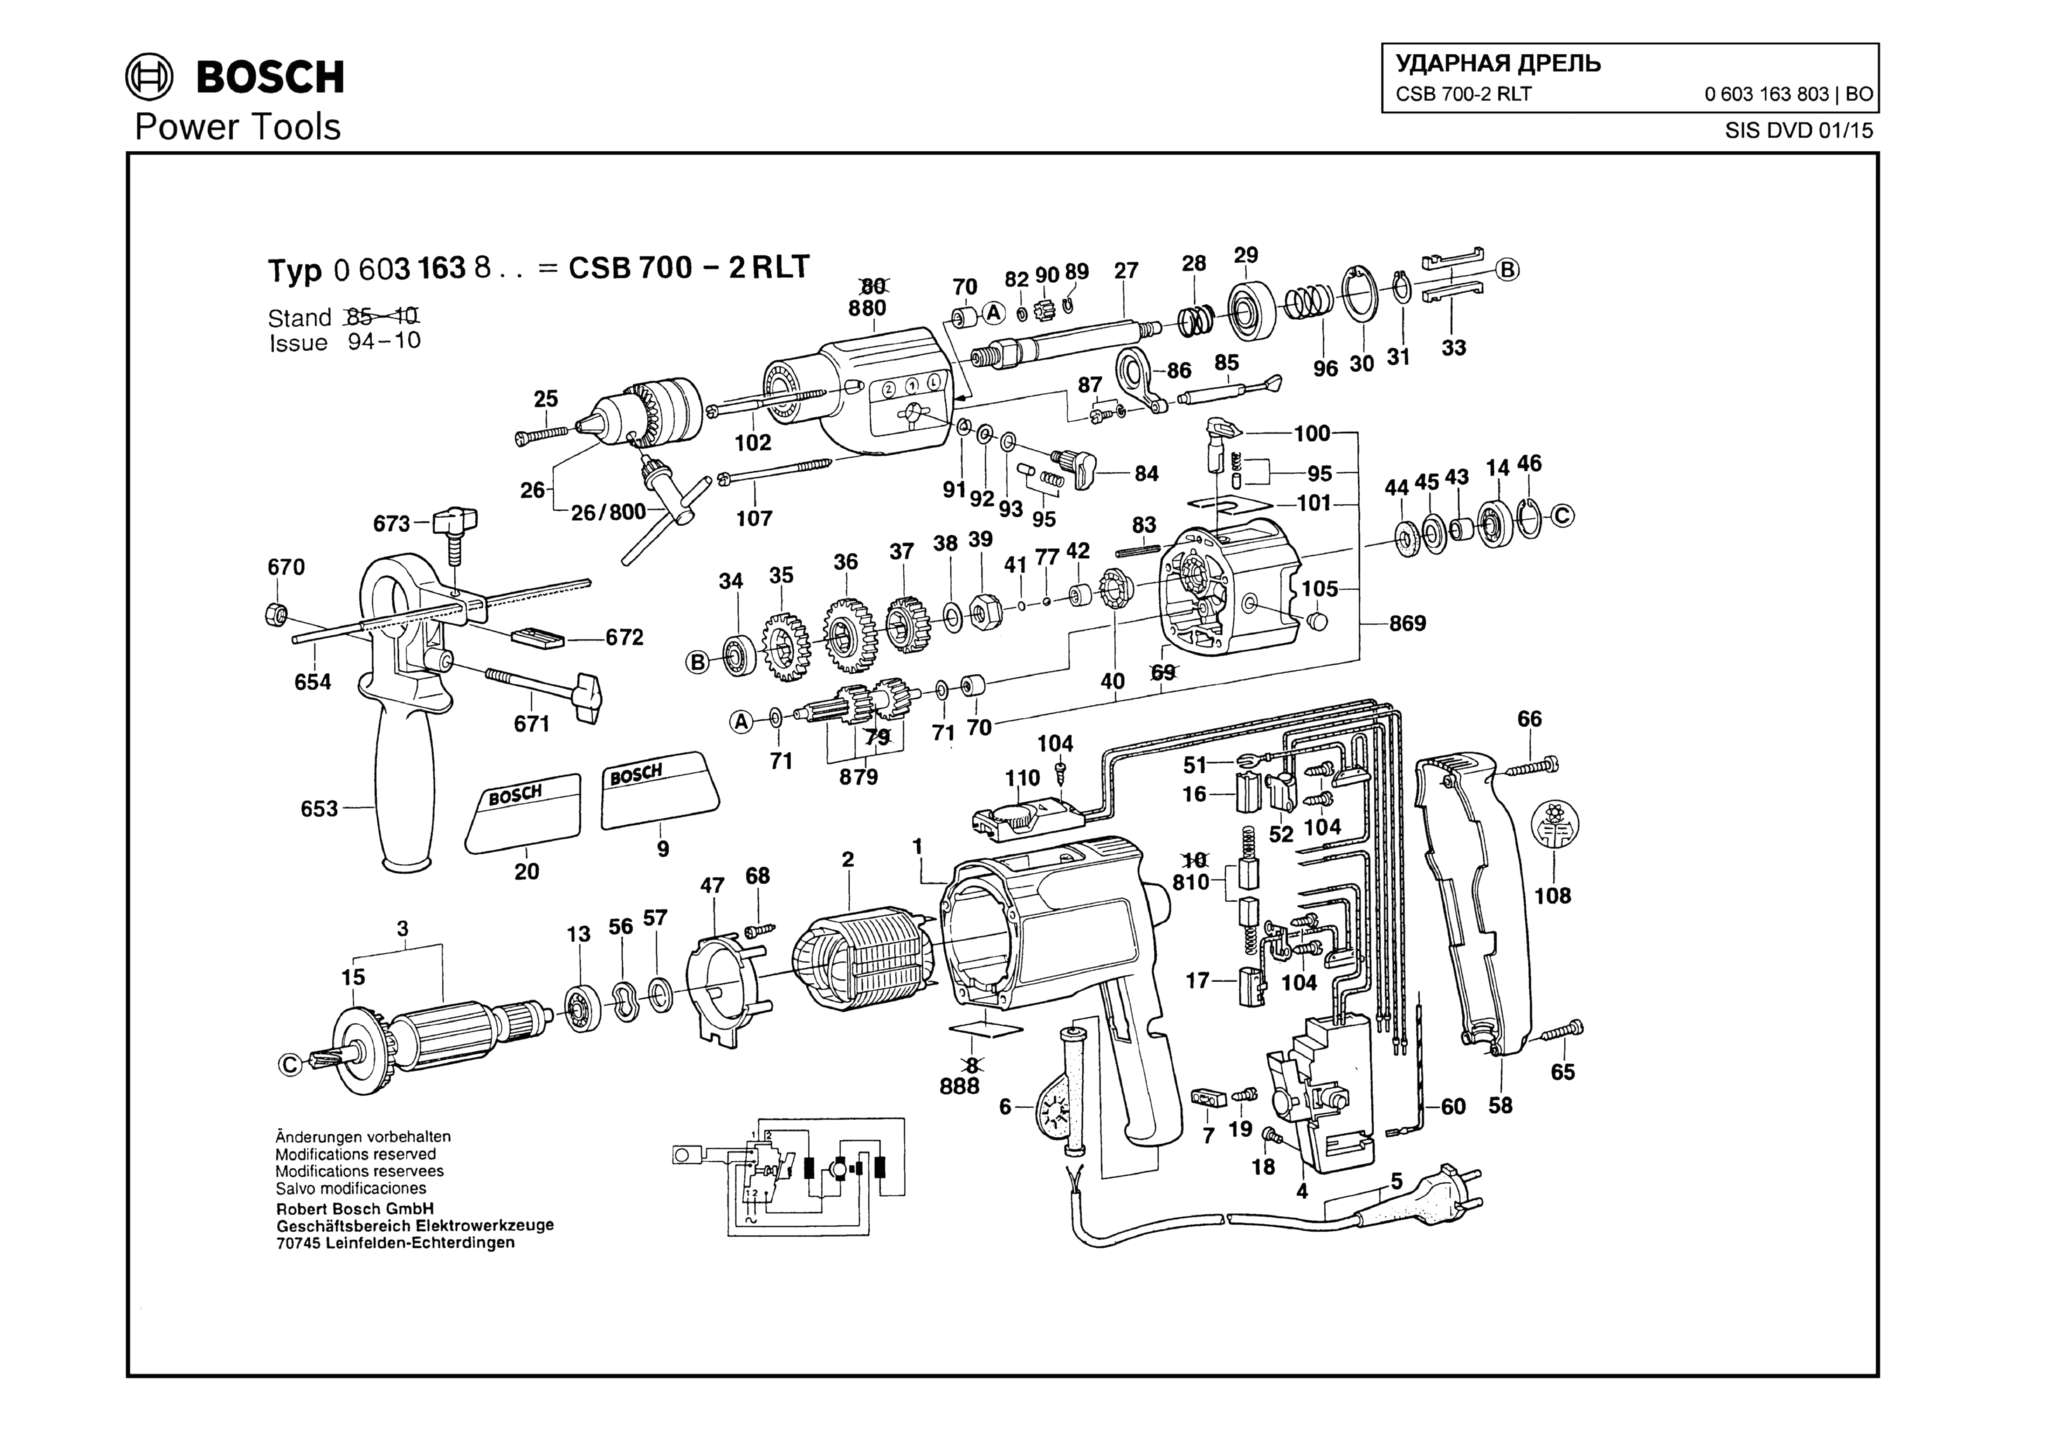 Запчасти, схема и деталировка Bosch CSB 700-2 RLT (ТИП 0603163803)